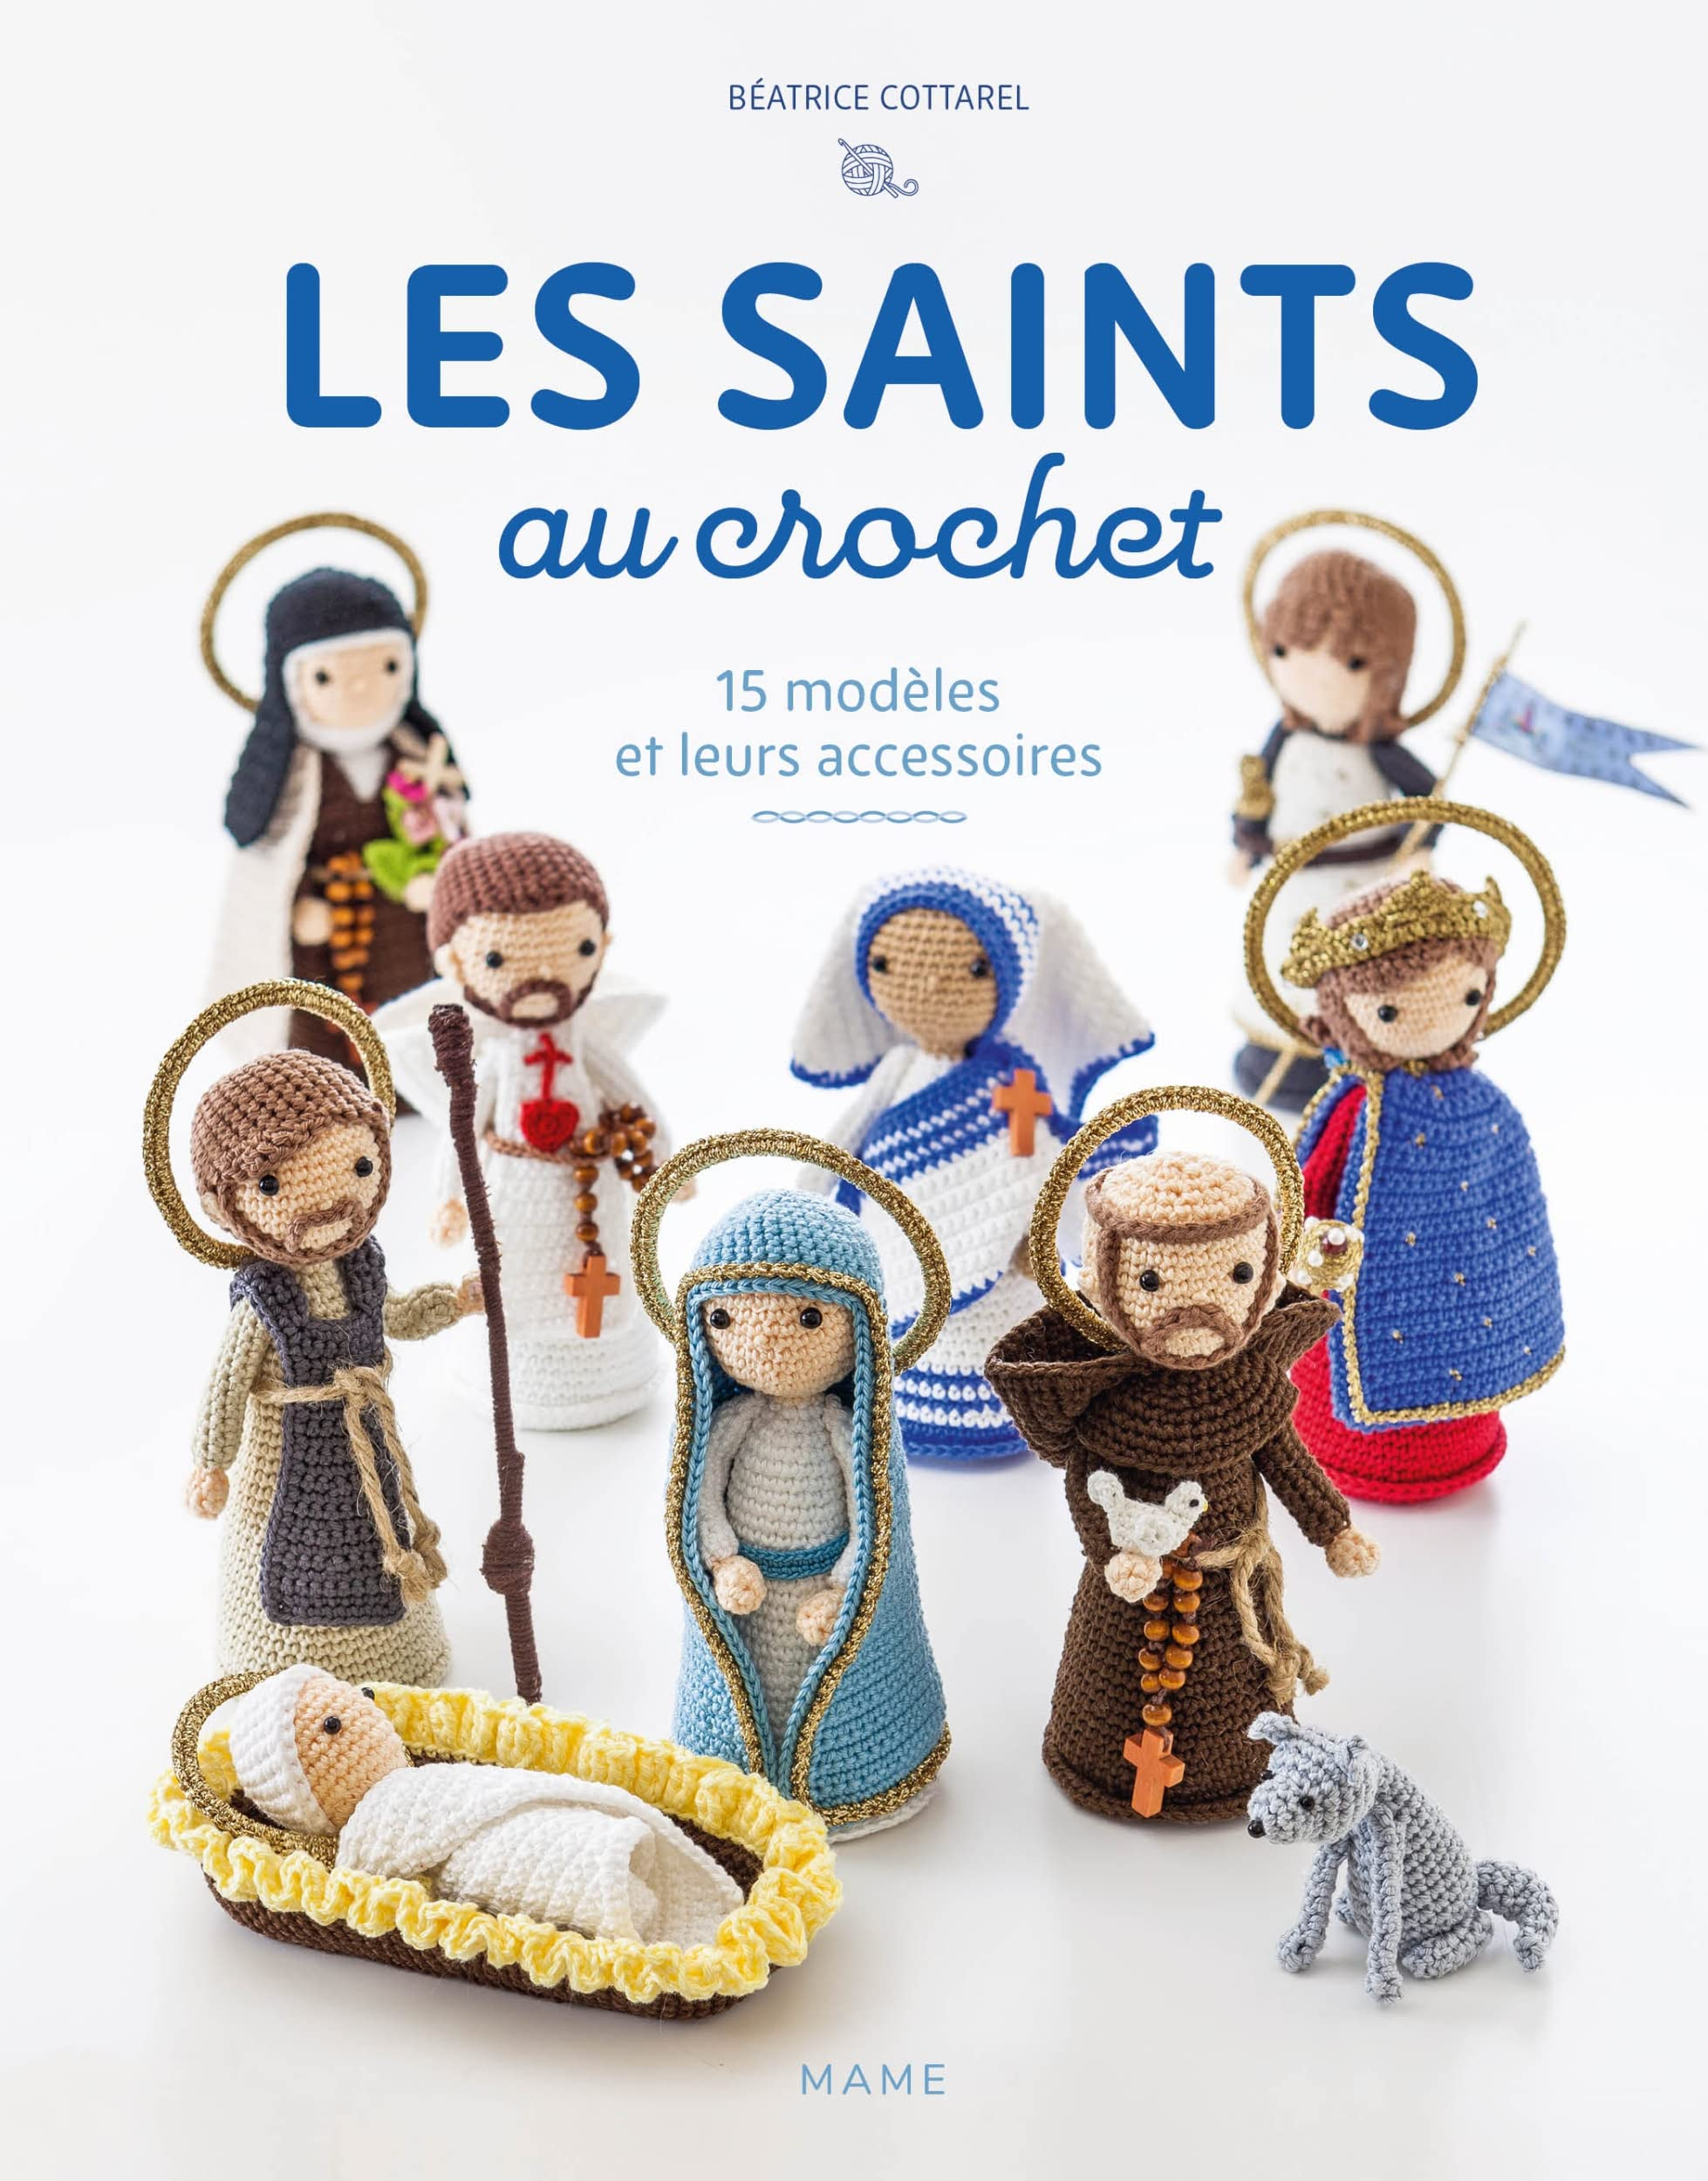 Les saints au crochet : 15 modèles et leurs accessoires